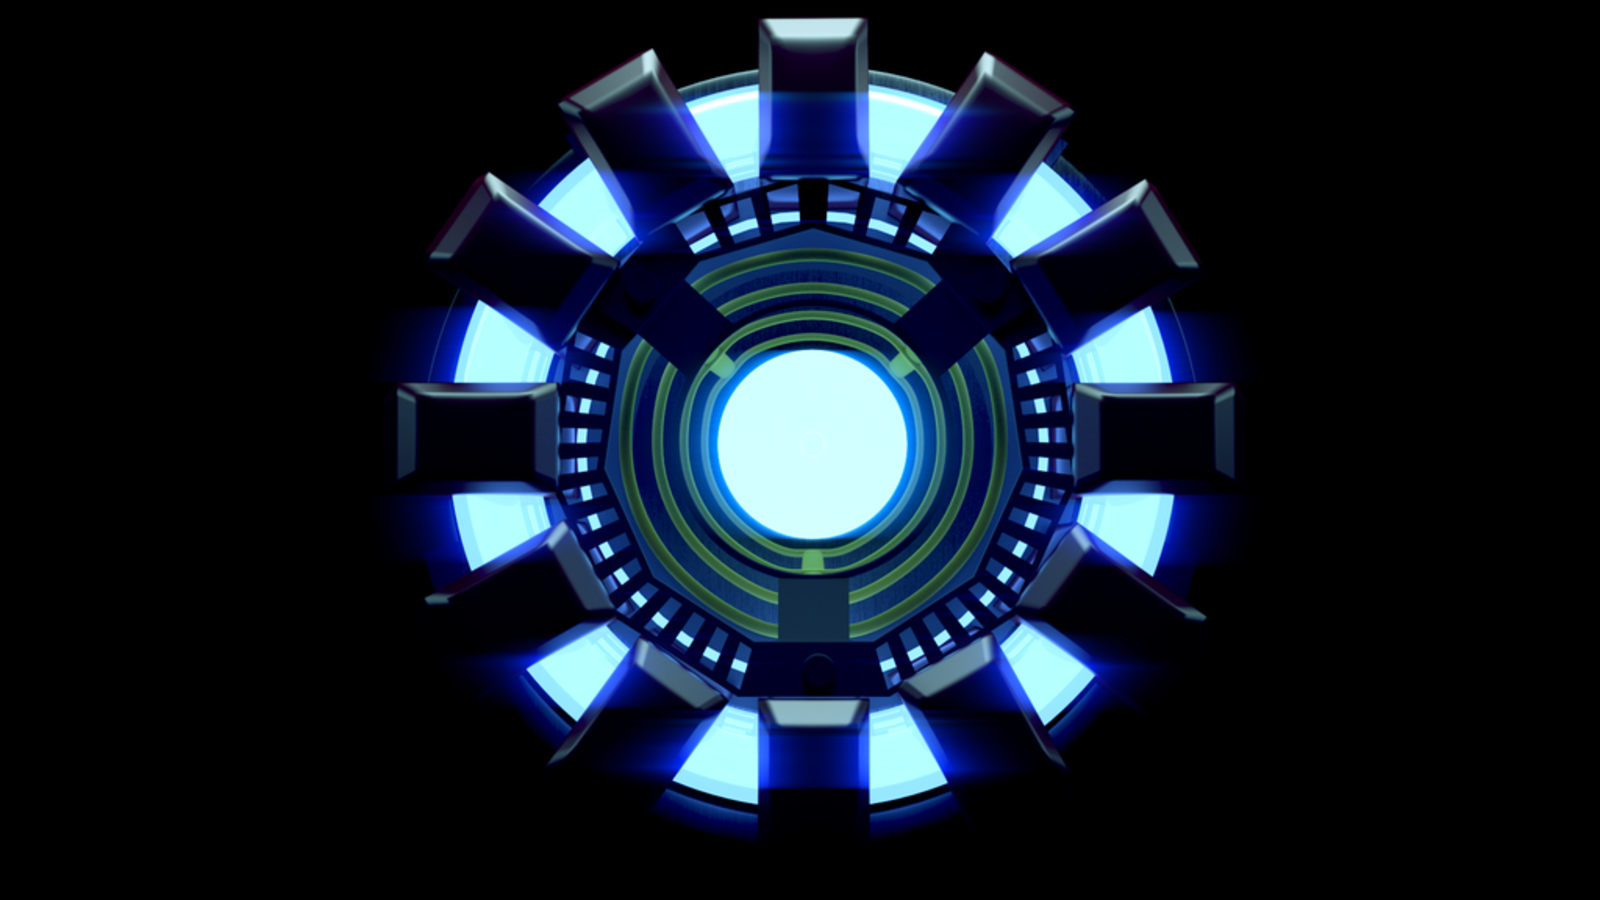 iron man arc réacteur fond d'écran,bleu,bleu cobalt,lumière,bleu électrique,symétrie